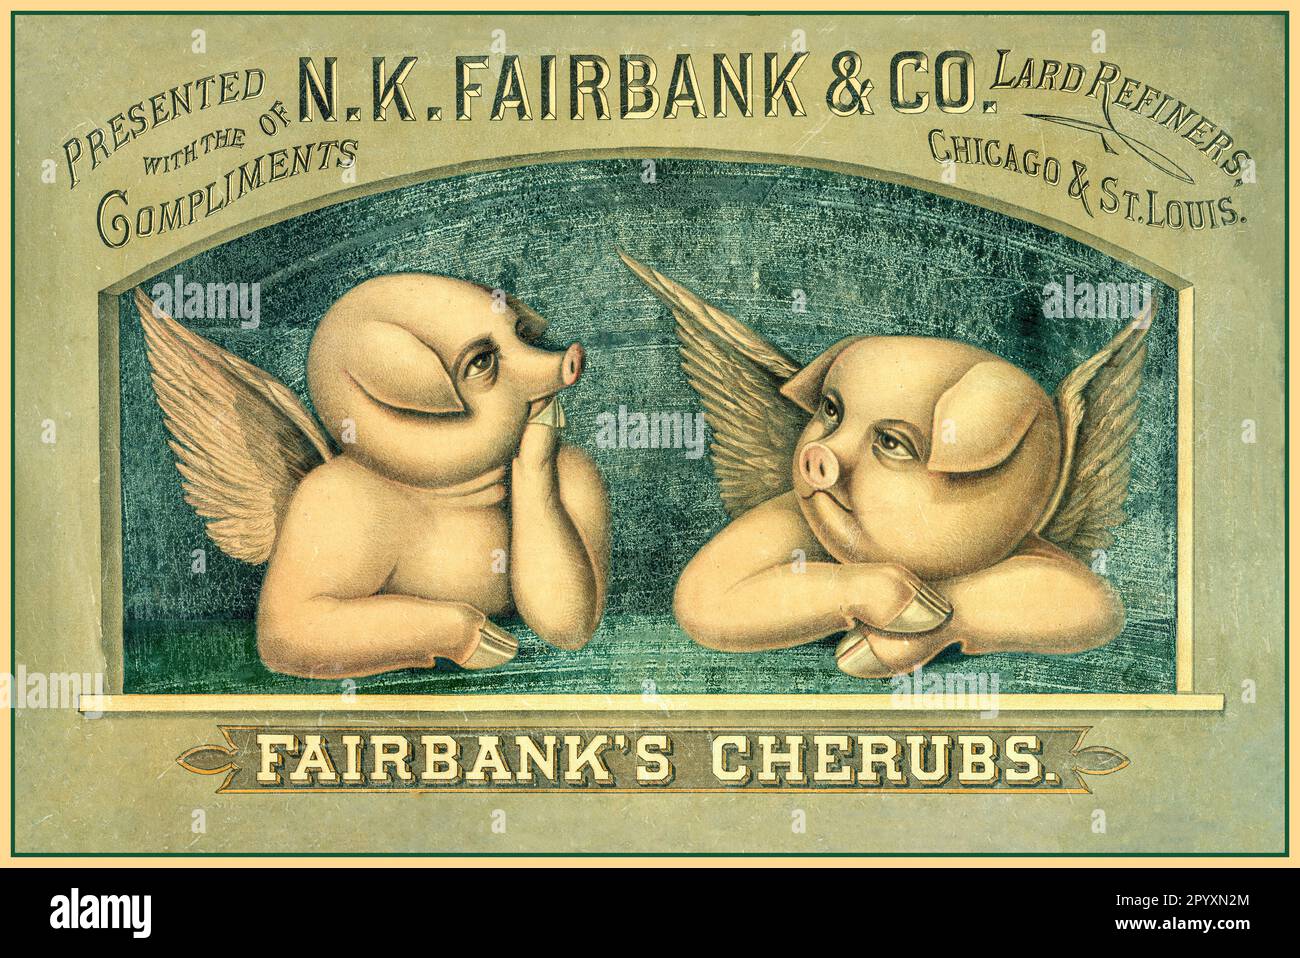 Vintage 1890s Food Poster Illustration pour les chérubins Fairbanks, deux porcelets avec ailes faisant la promotion d'une raffinerie de saindoux de porc NK Fairbank & Co Chicago et St. Louis Amérique États-Unis Banque D'Images